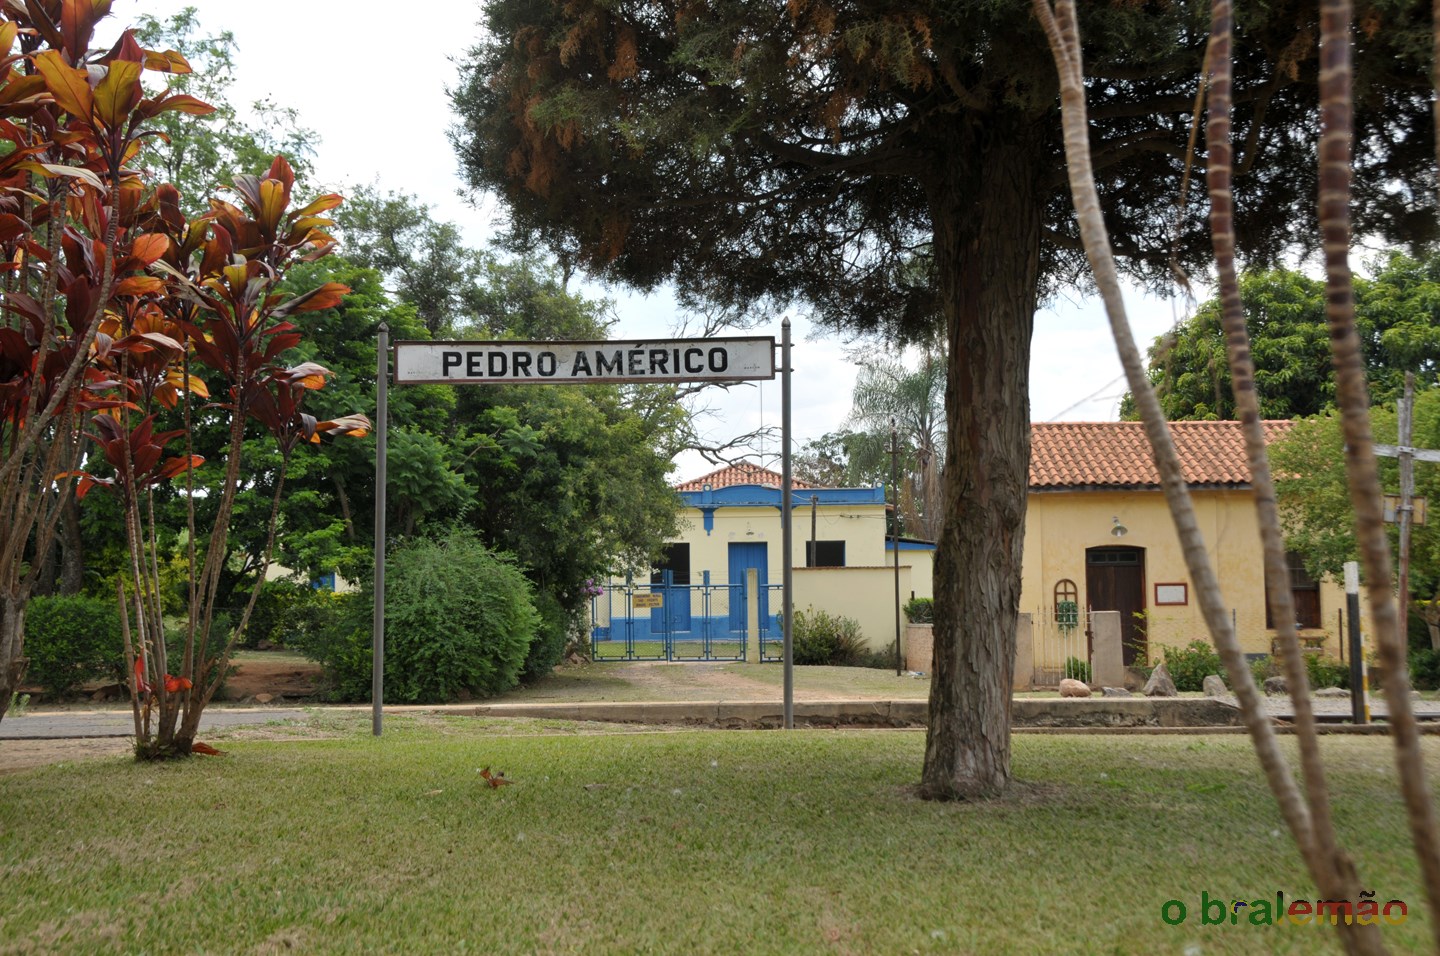 Estação Pedro Amérigo - Maria Fumaçã, Campinas